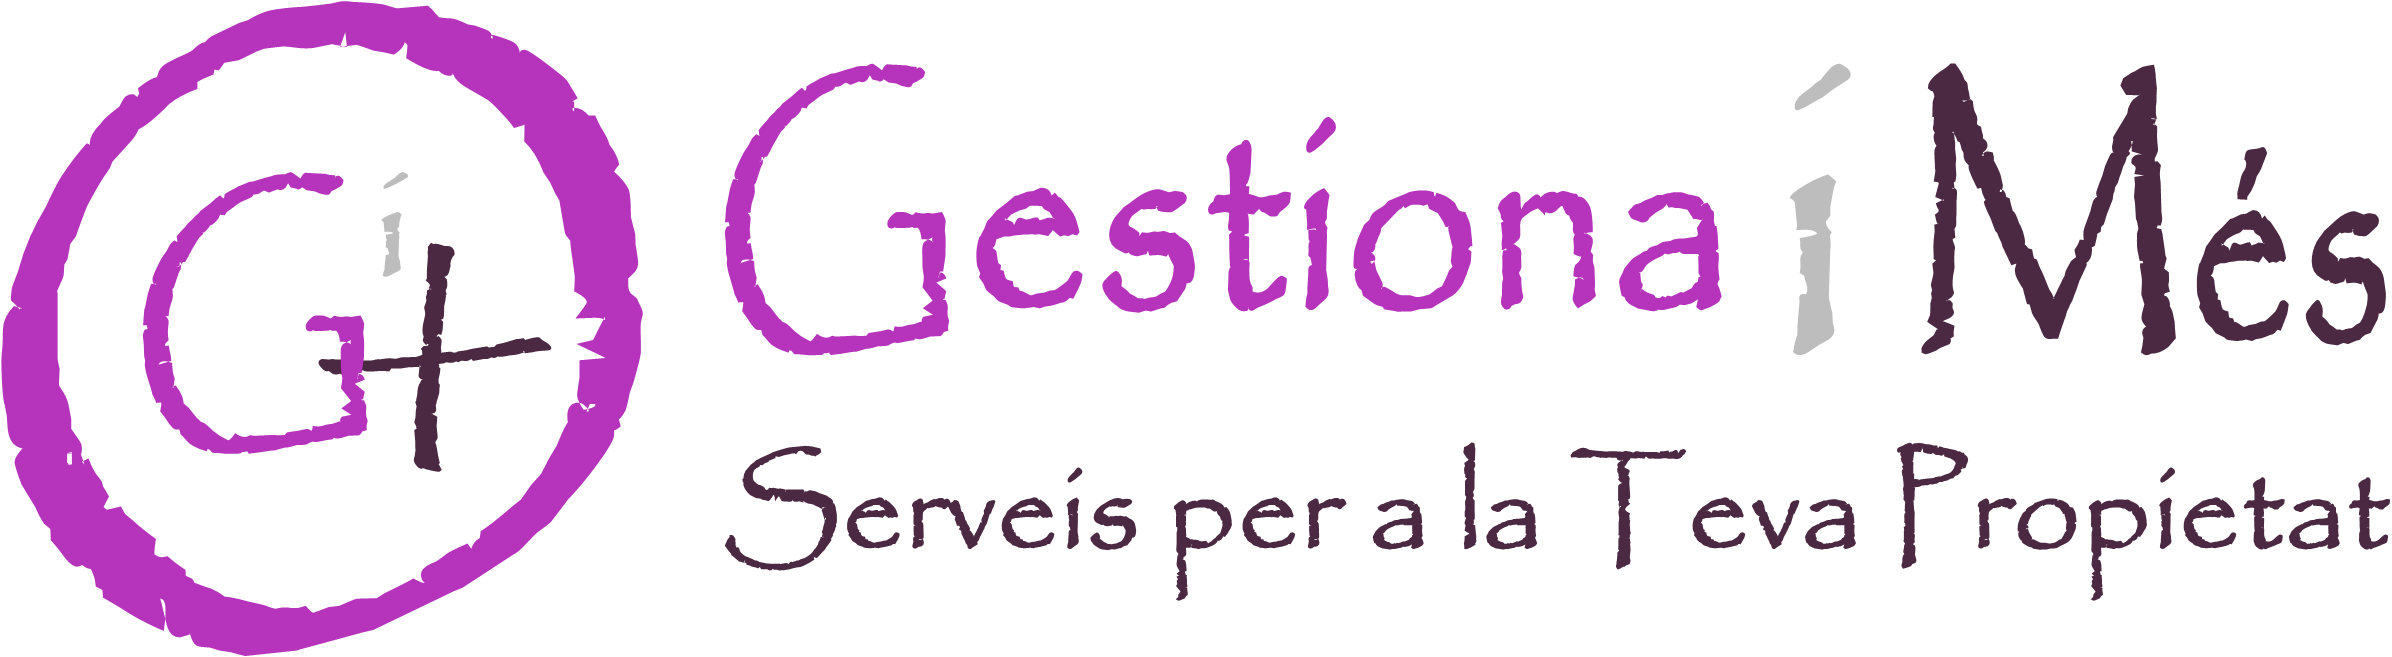 Logo Gestiona I Més Torredembarra